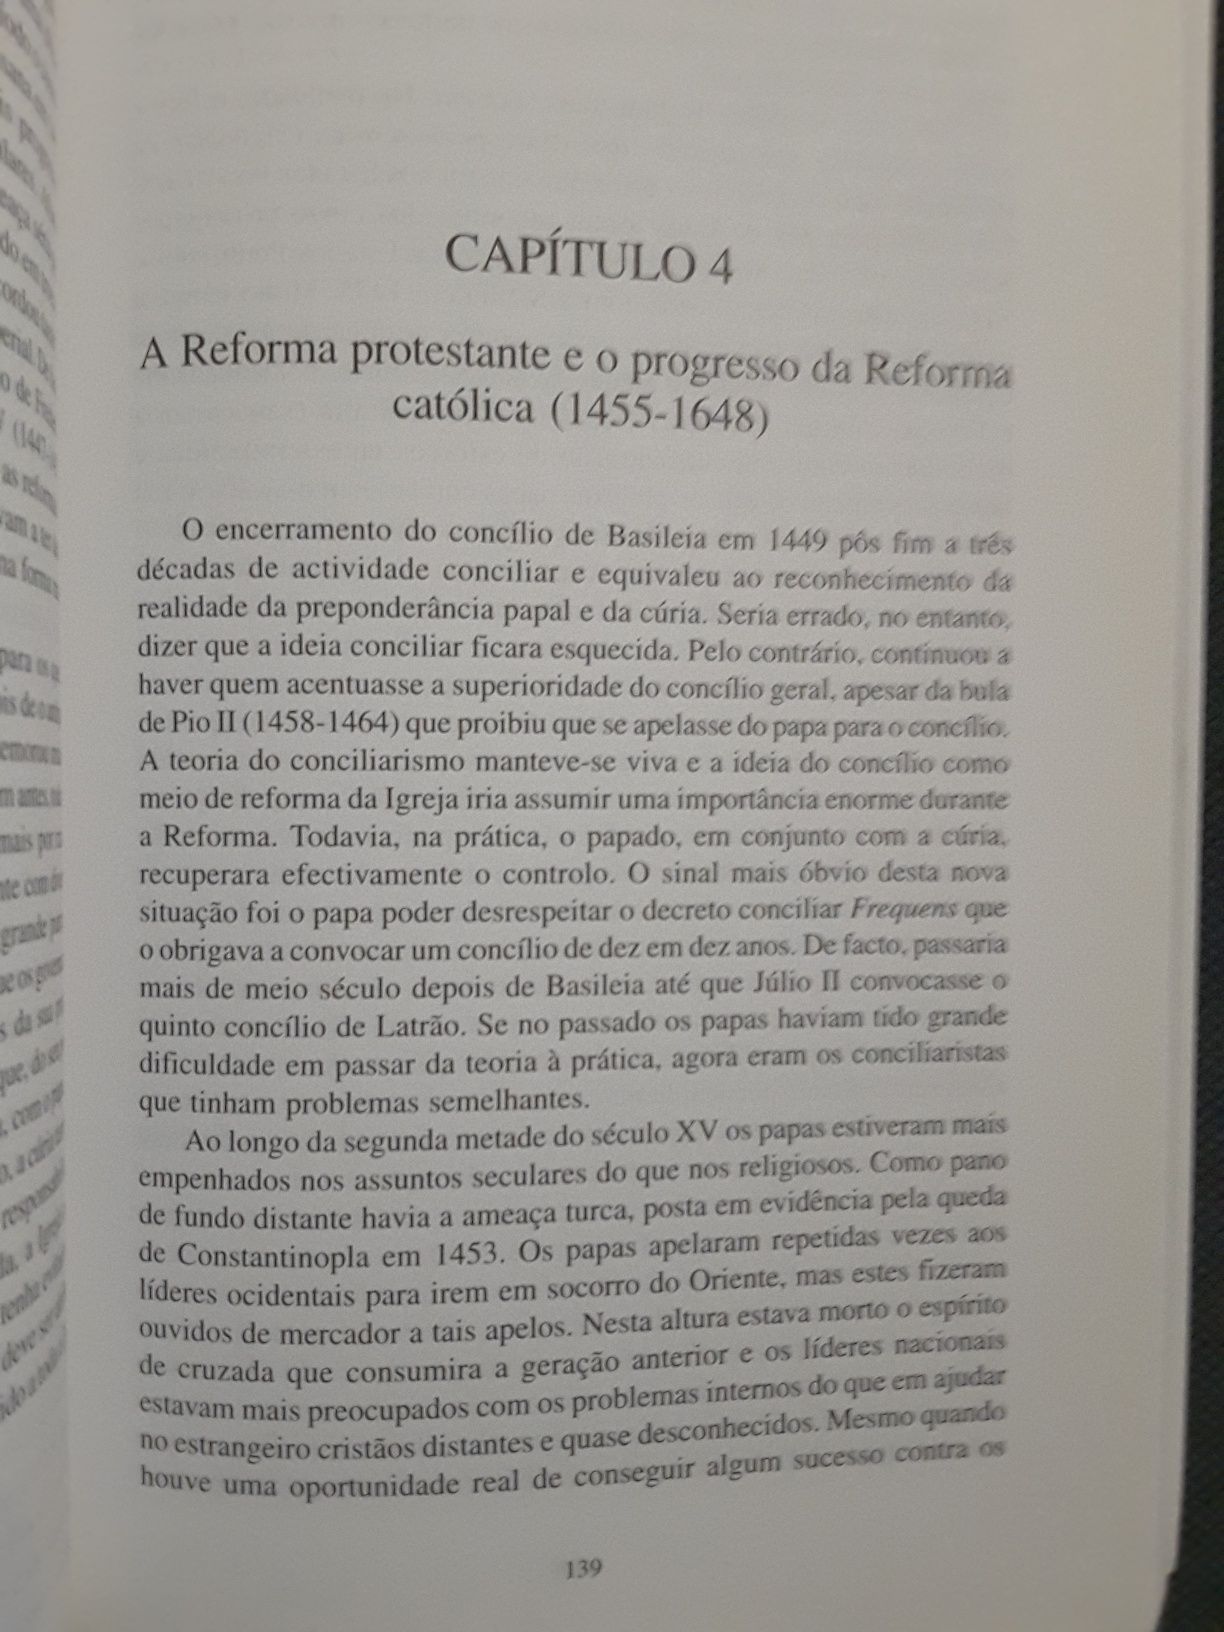 Portugueses e Malaios / História da Igreja Católica